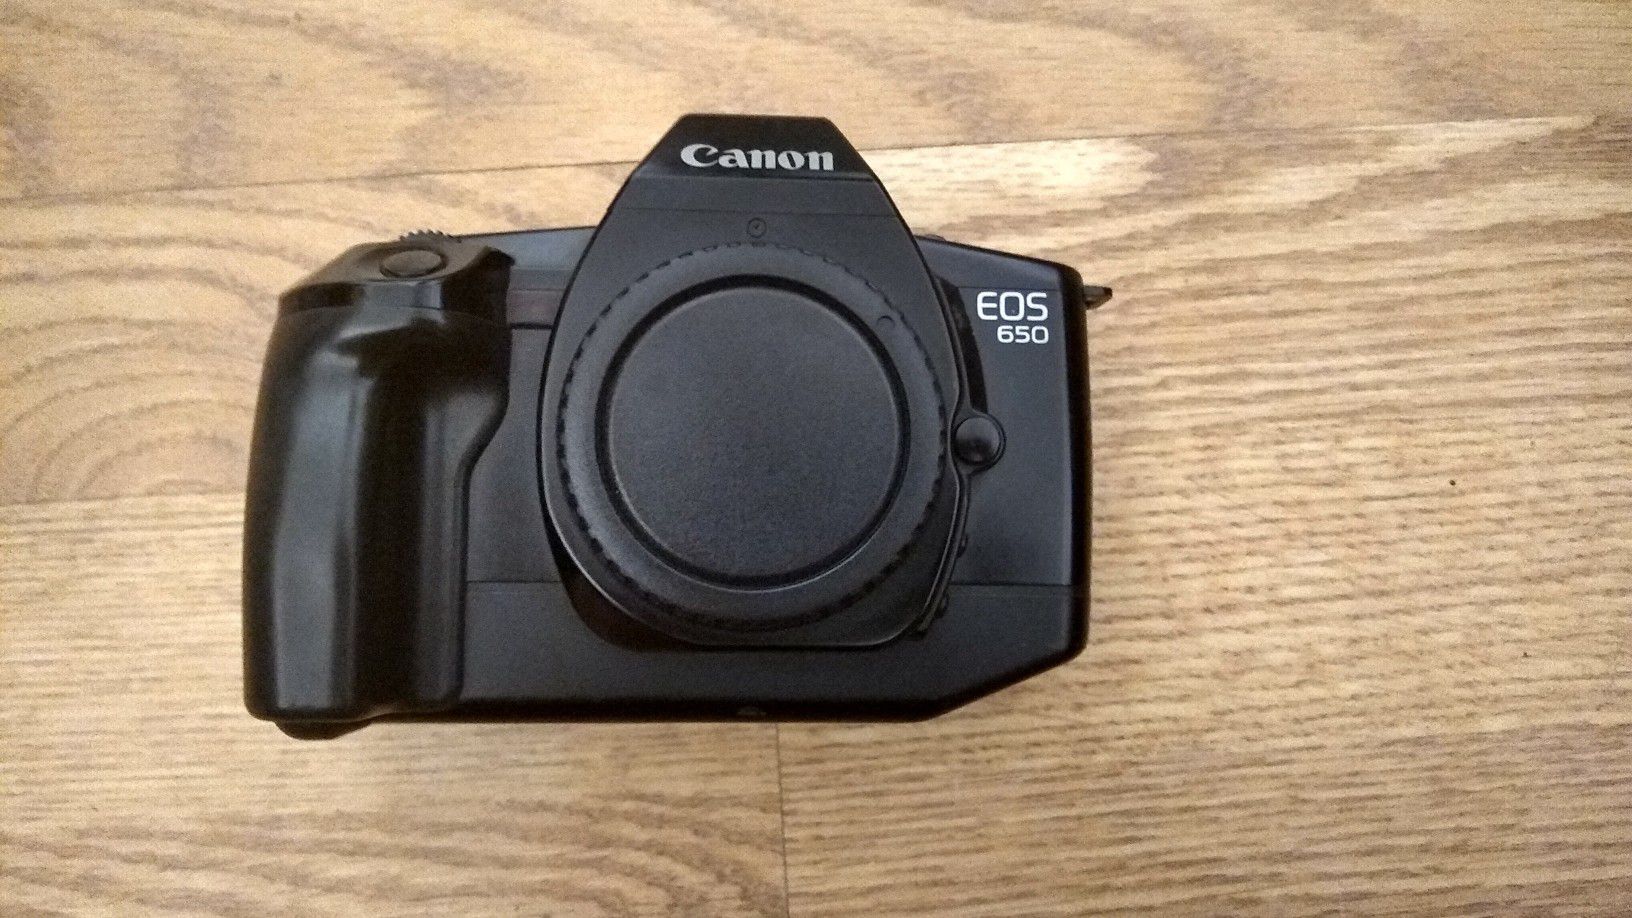 Canon EOS 650 FILM Camera